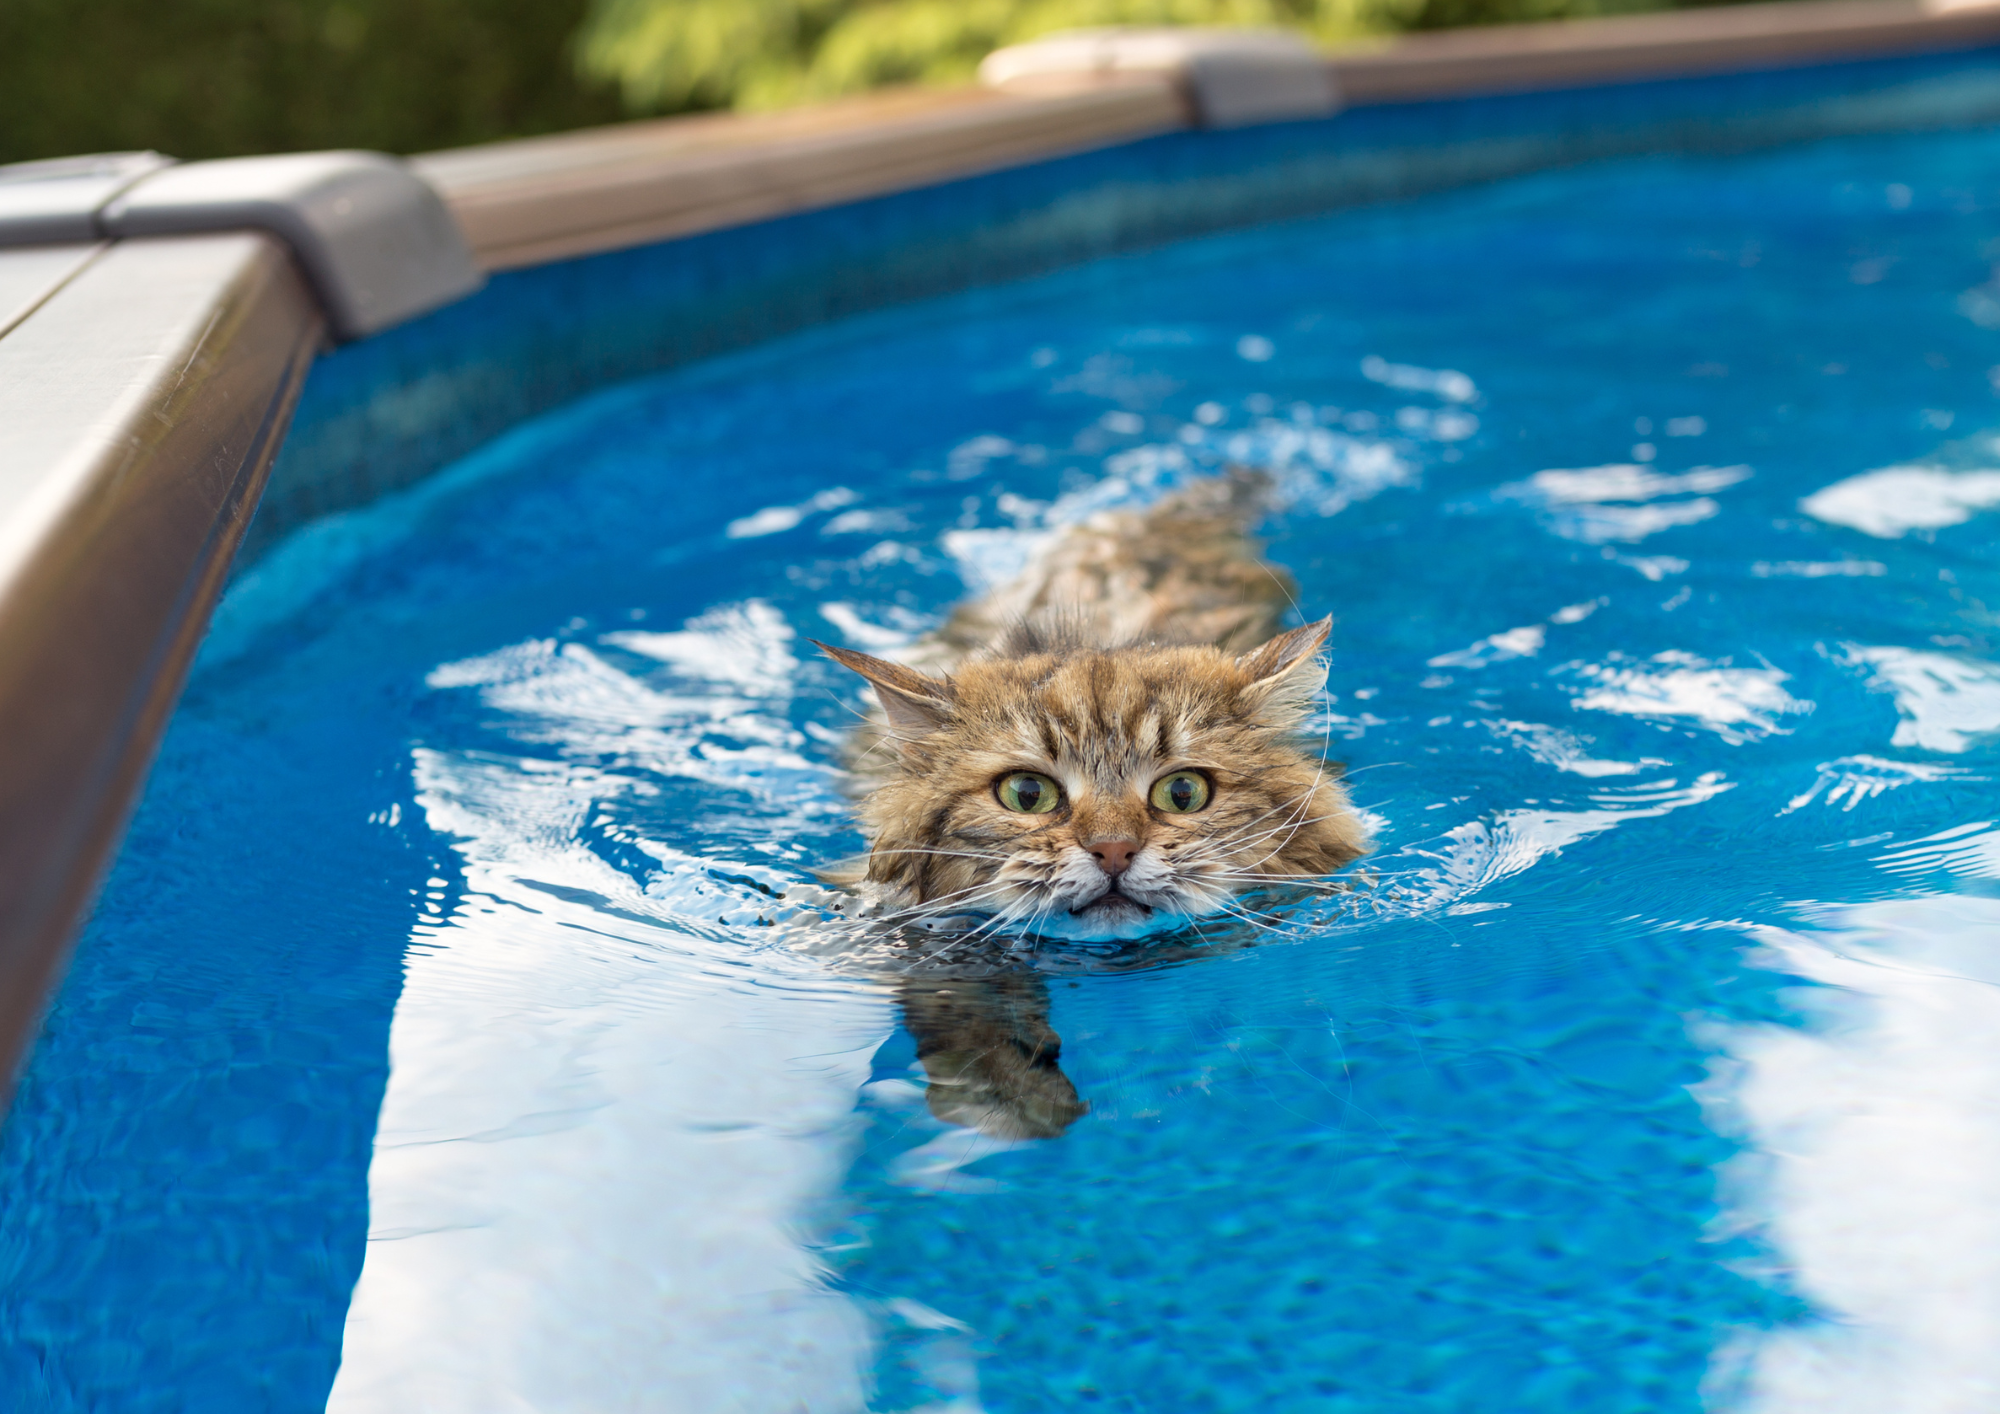 Animal domestico en piscina sin protección